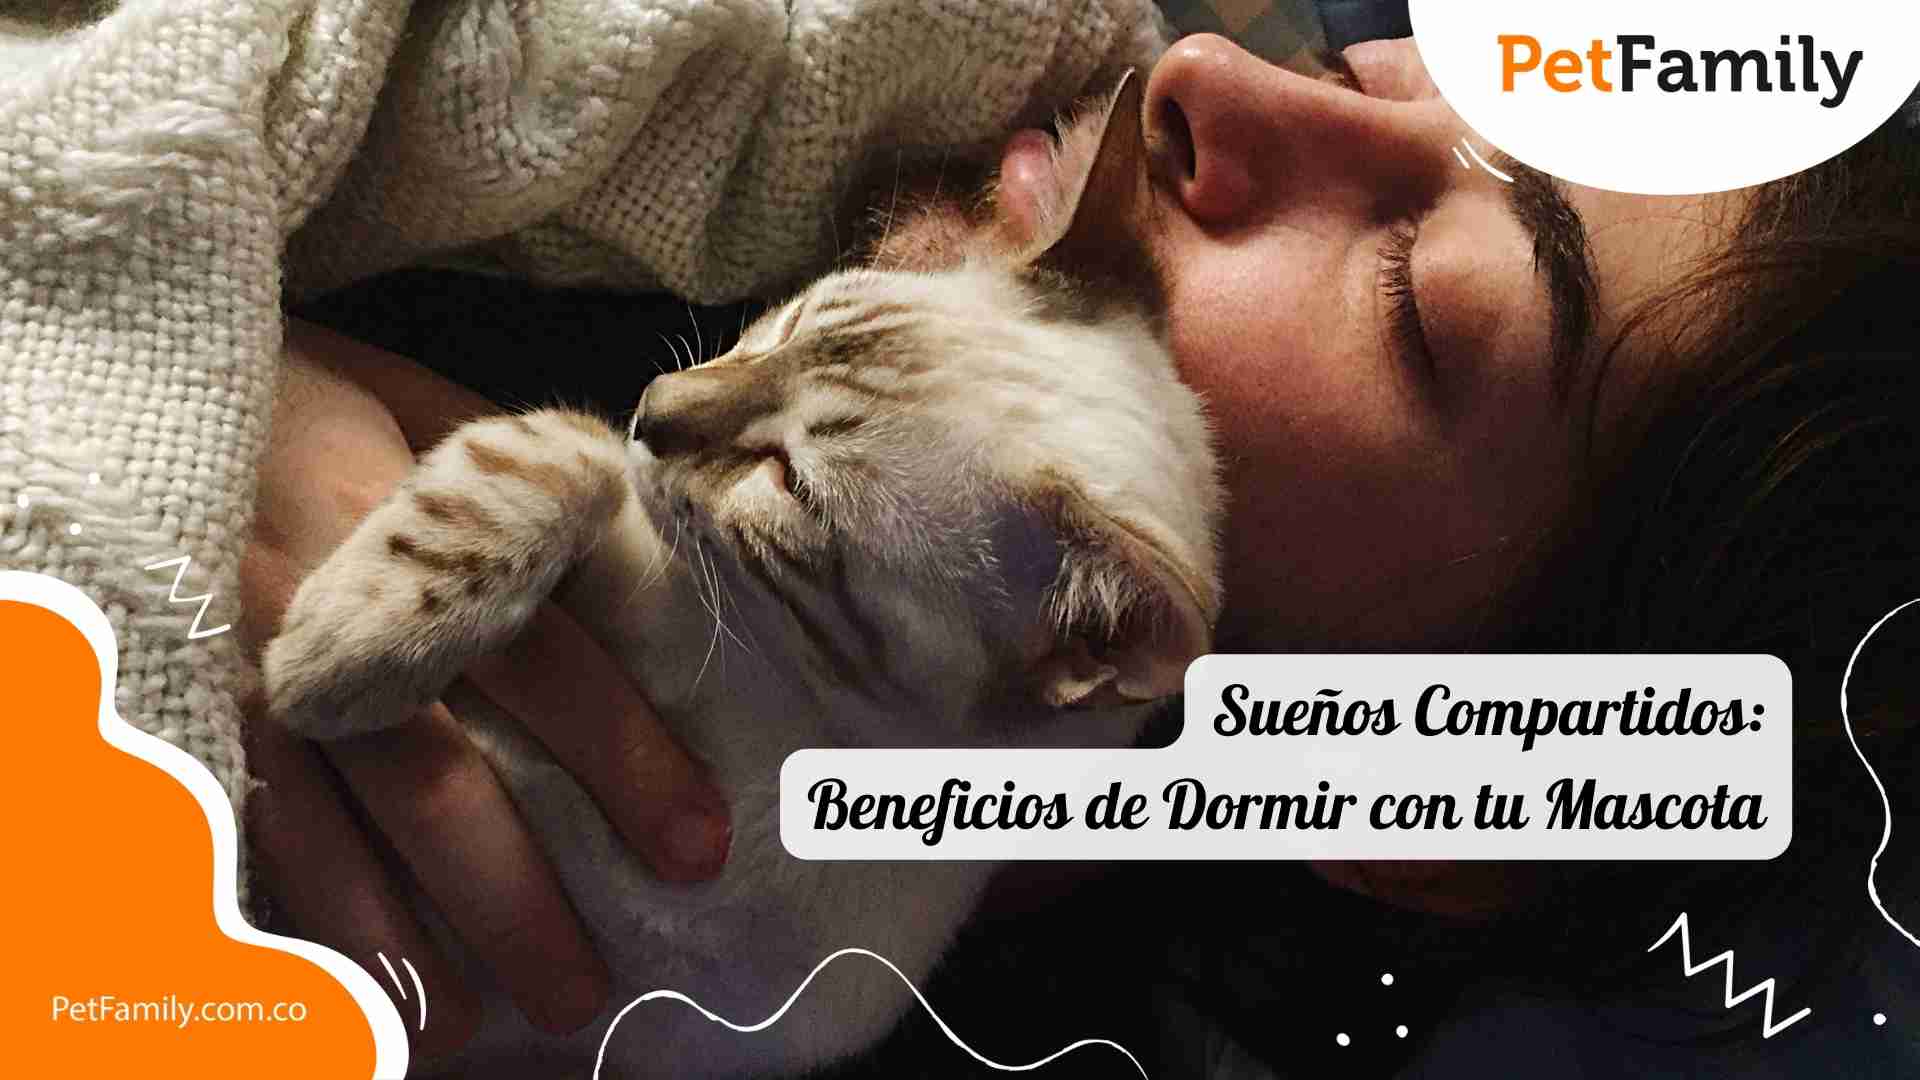 Sueños Compartidos: Beneficios de Dormir con tu Mascota